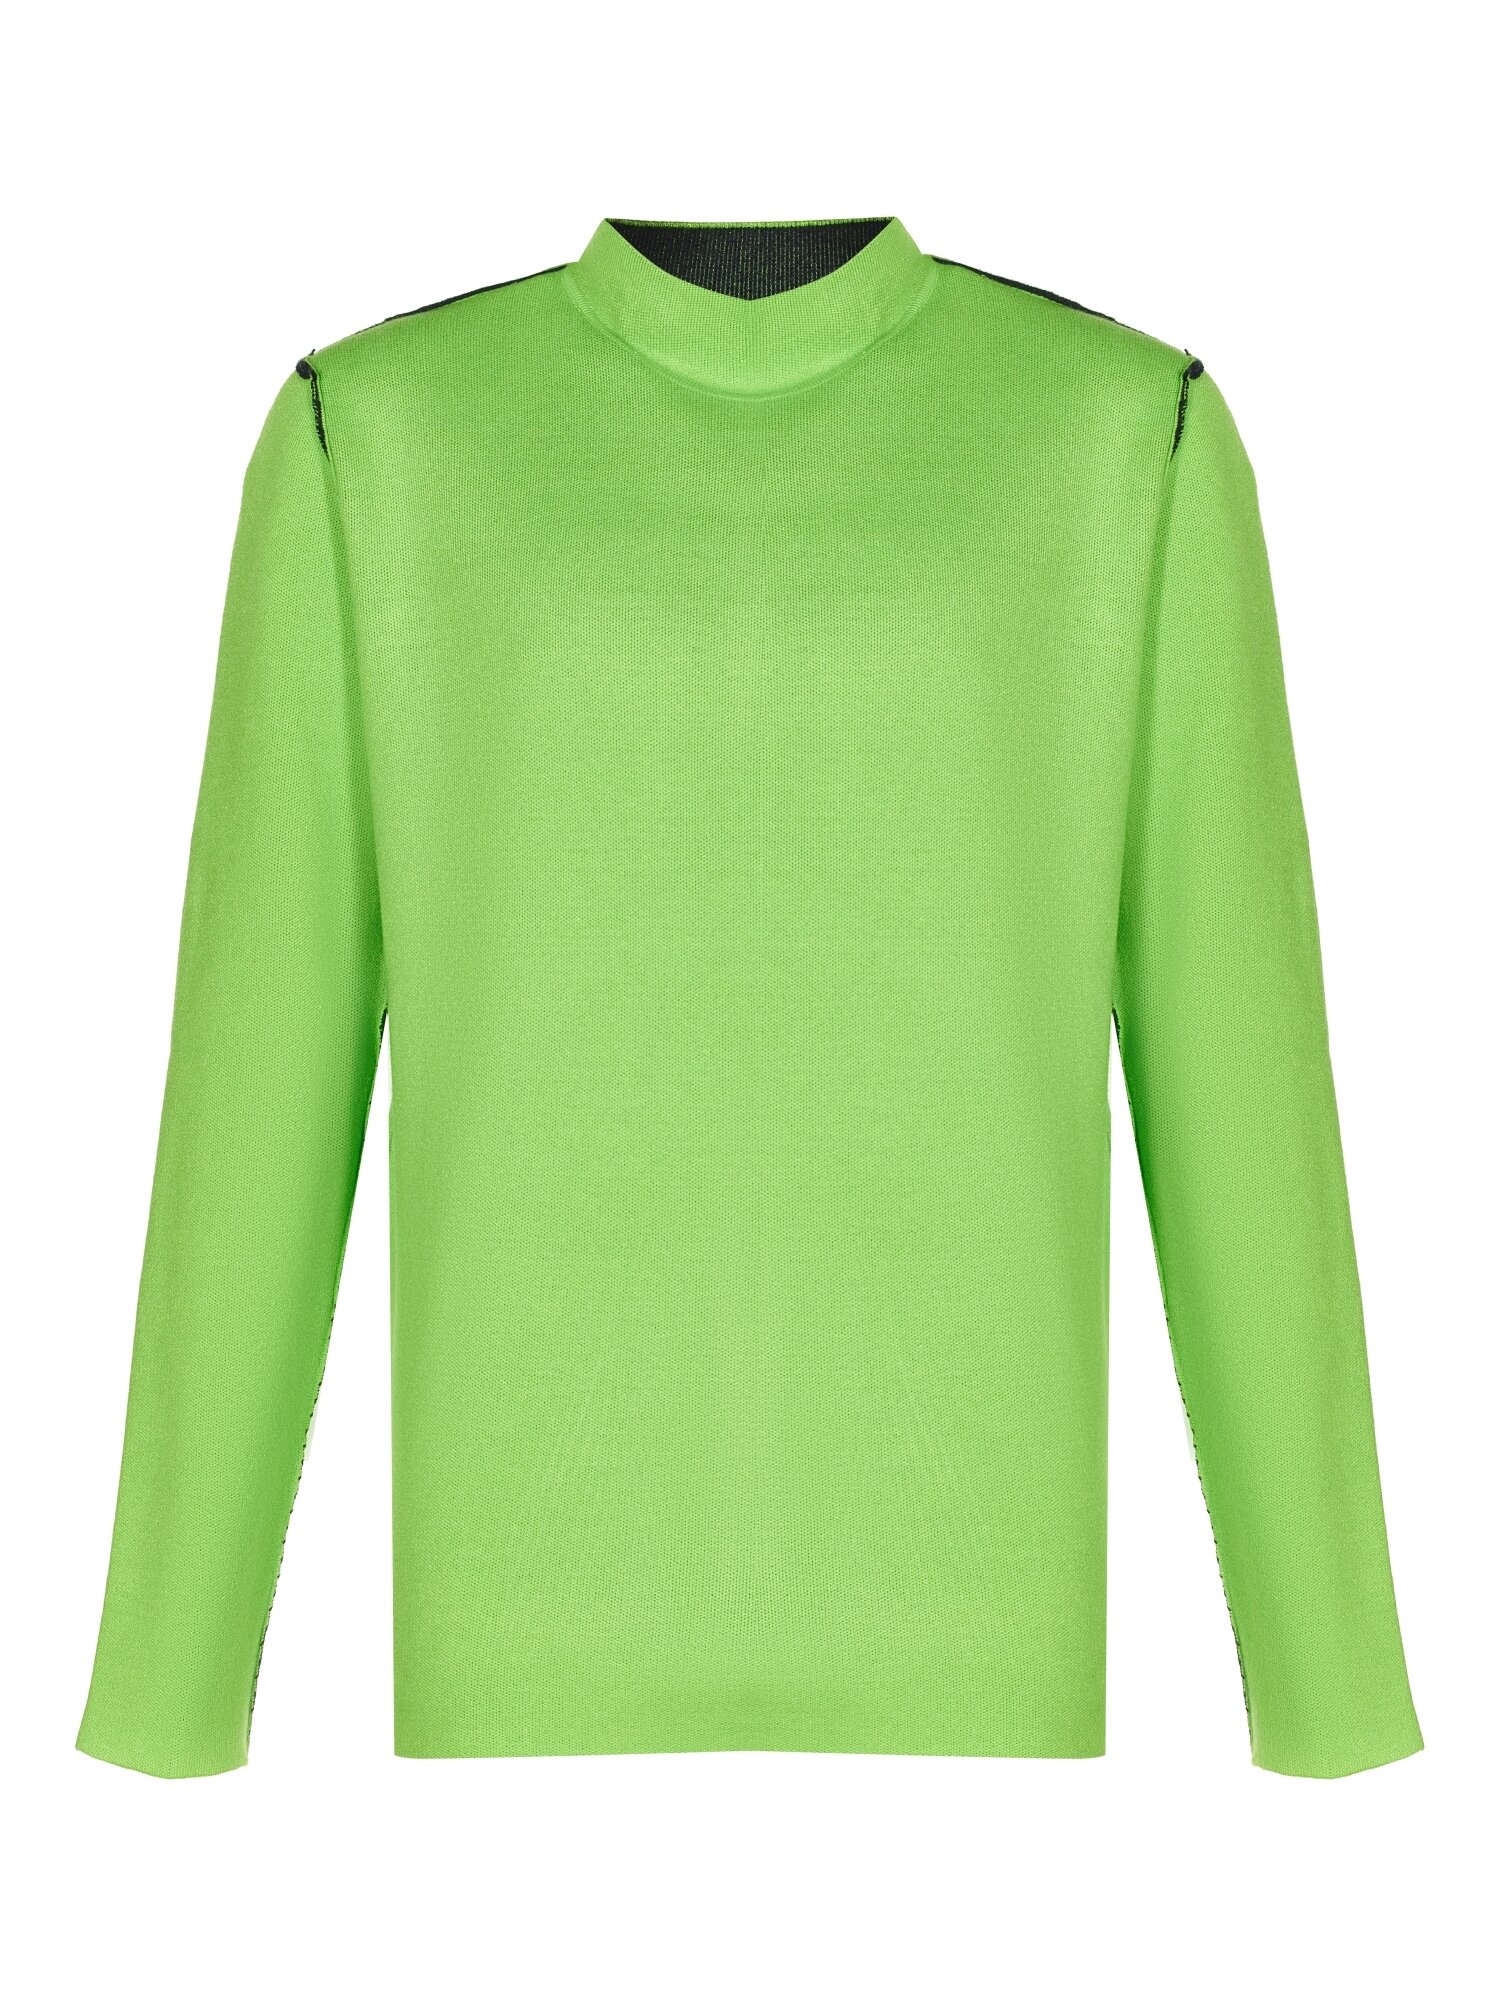 Пуловер Wellensteyn зеленый 